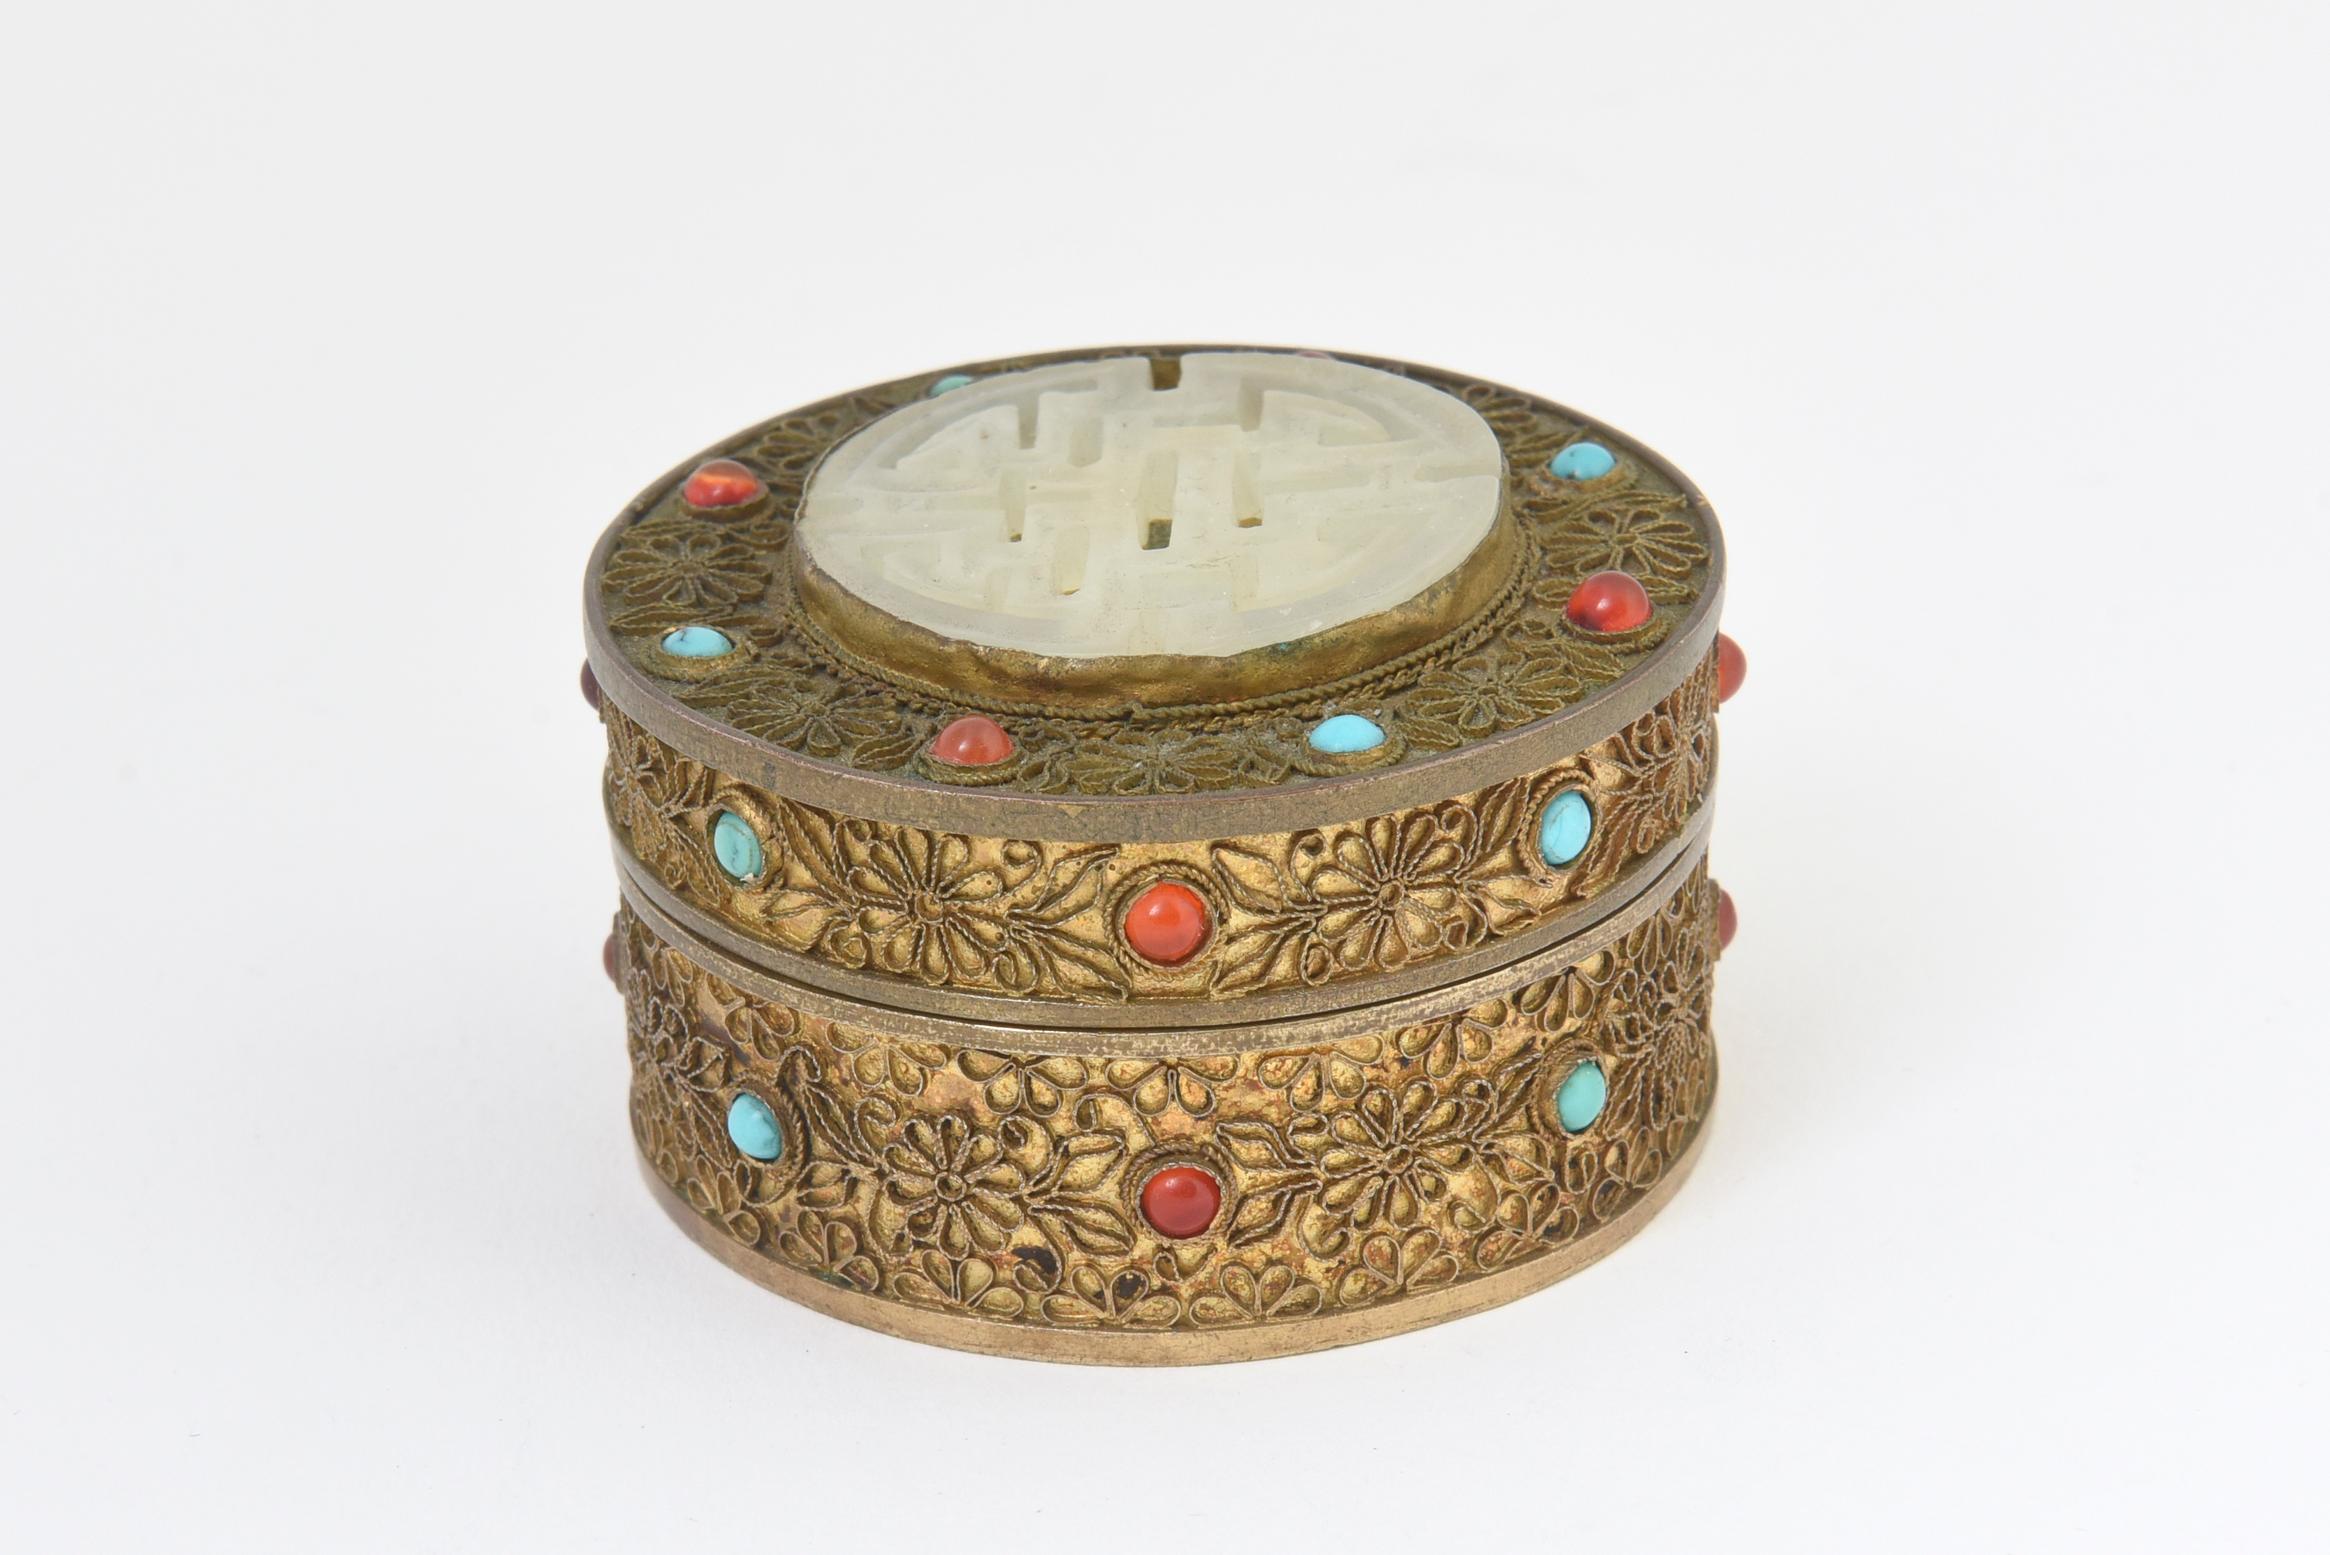 Boîte à bijoux asiatique en laiton doré avec des pierres précieuses en cornaline et turquoise. Le couvercle amovible comporte un médaillon en stéatite asiatique sculpté sur le dessus. Usure due à l'âge.